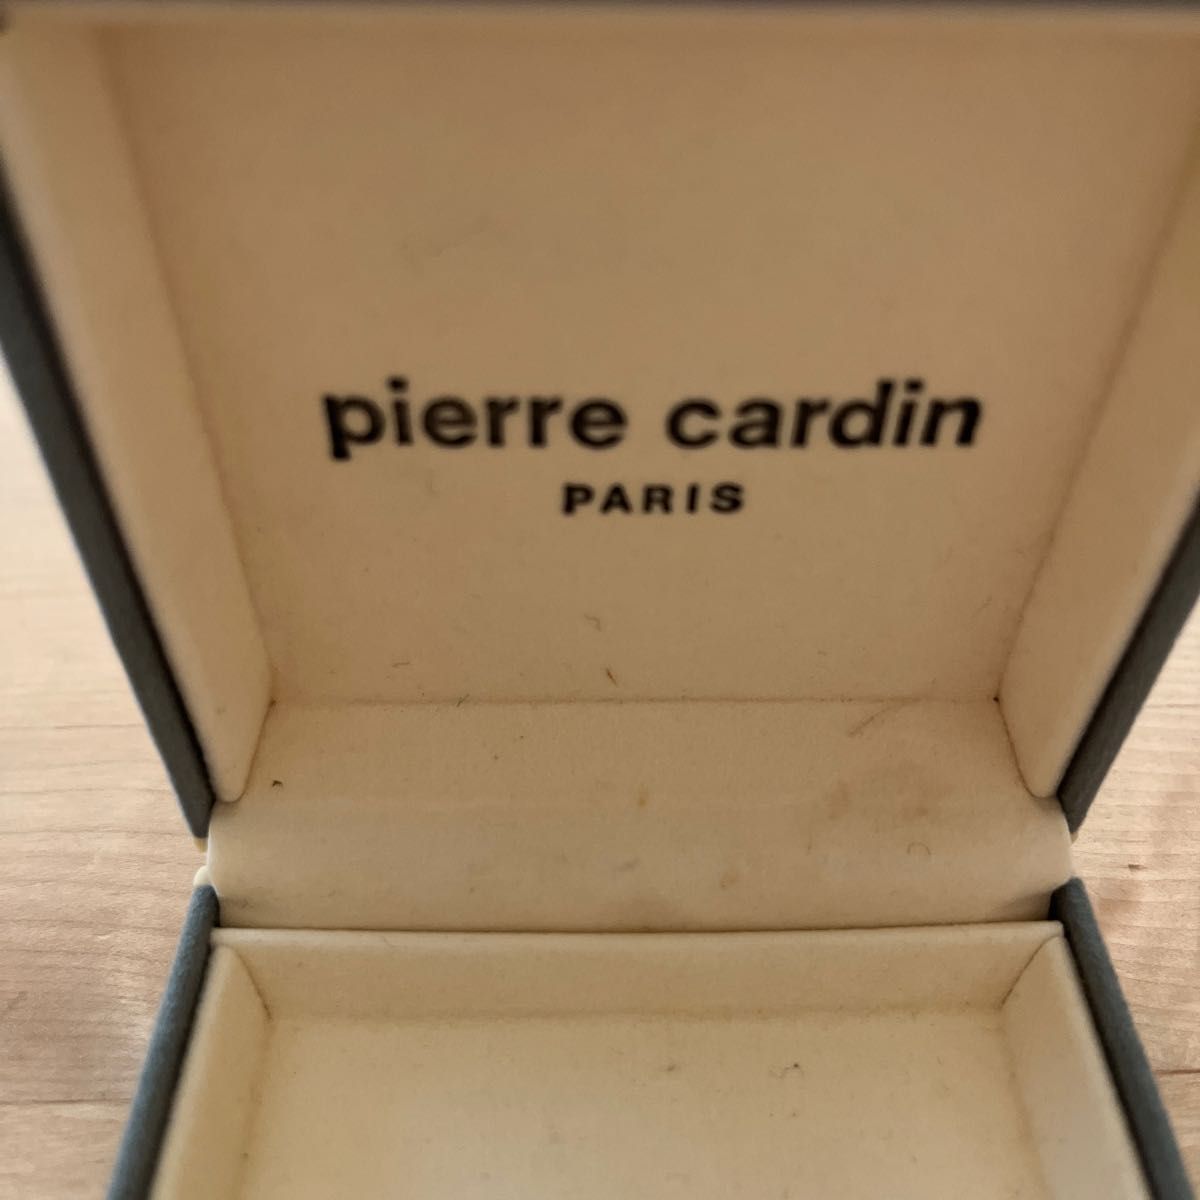 ピエールカルダン Pierre Cardin Paris カフスボタン セット